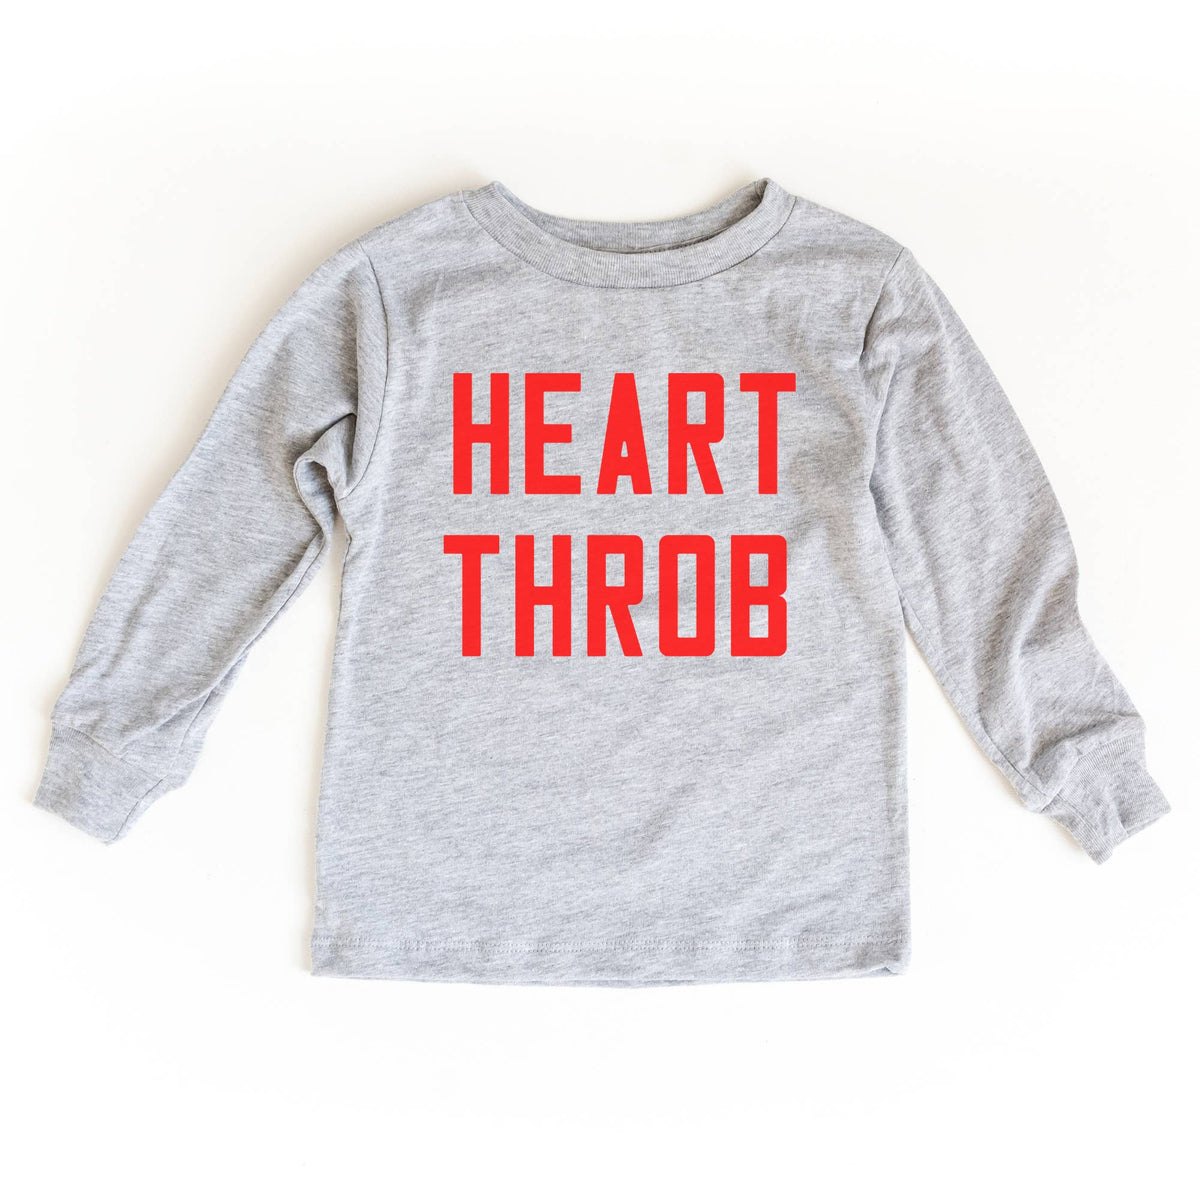 Heart Throb Long Sleeved T-Shirt - FINAL SALE